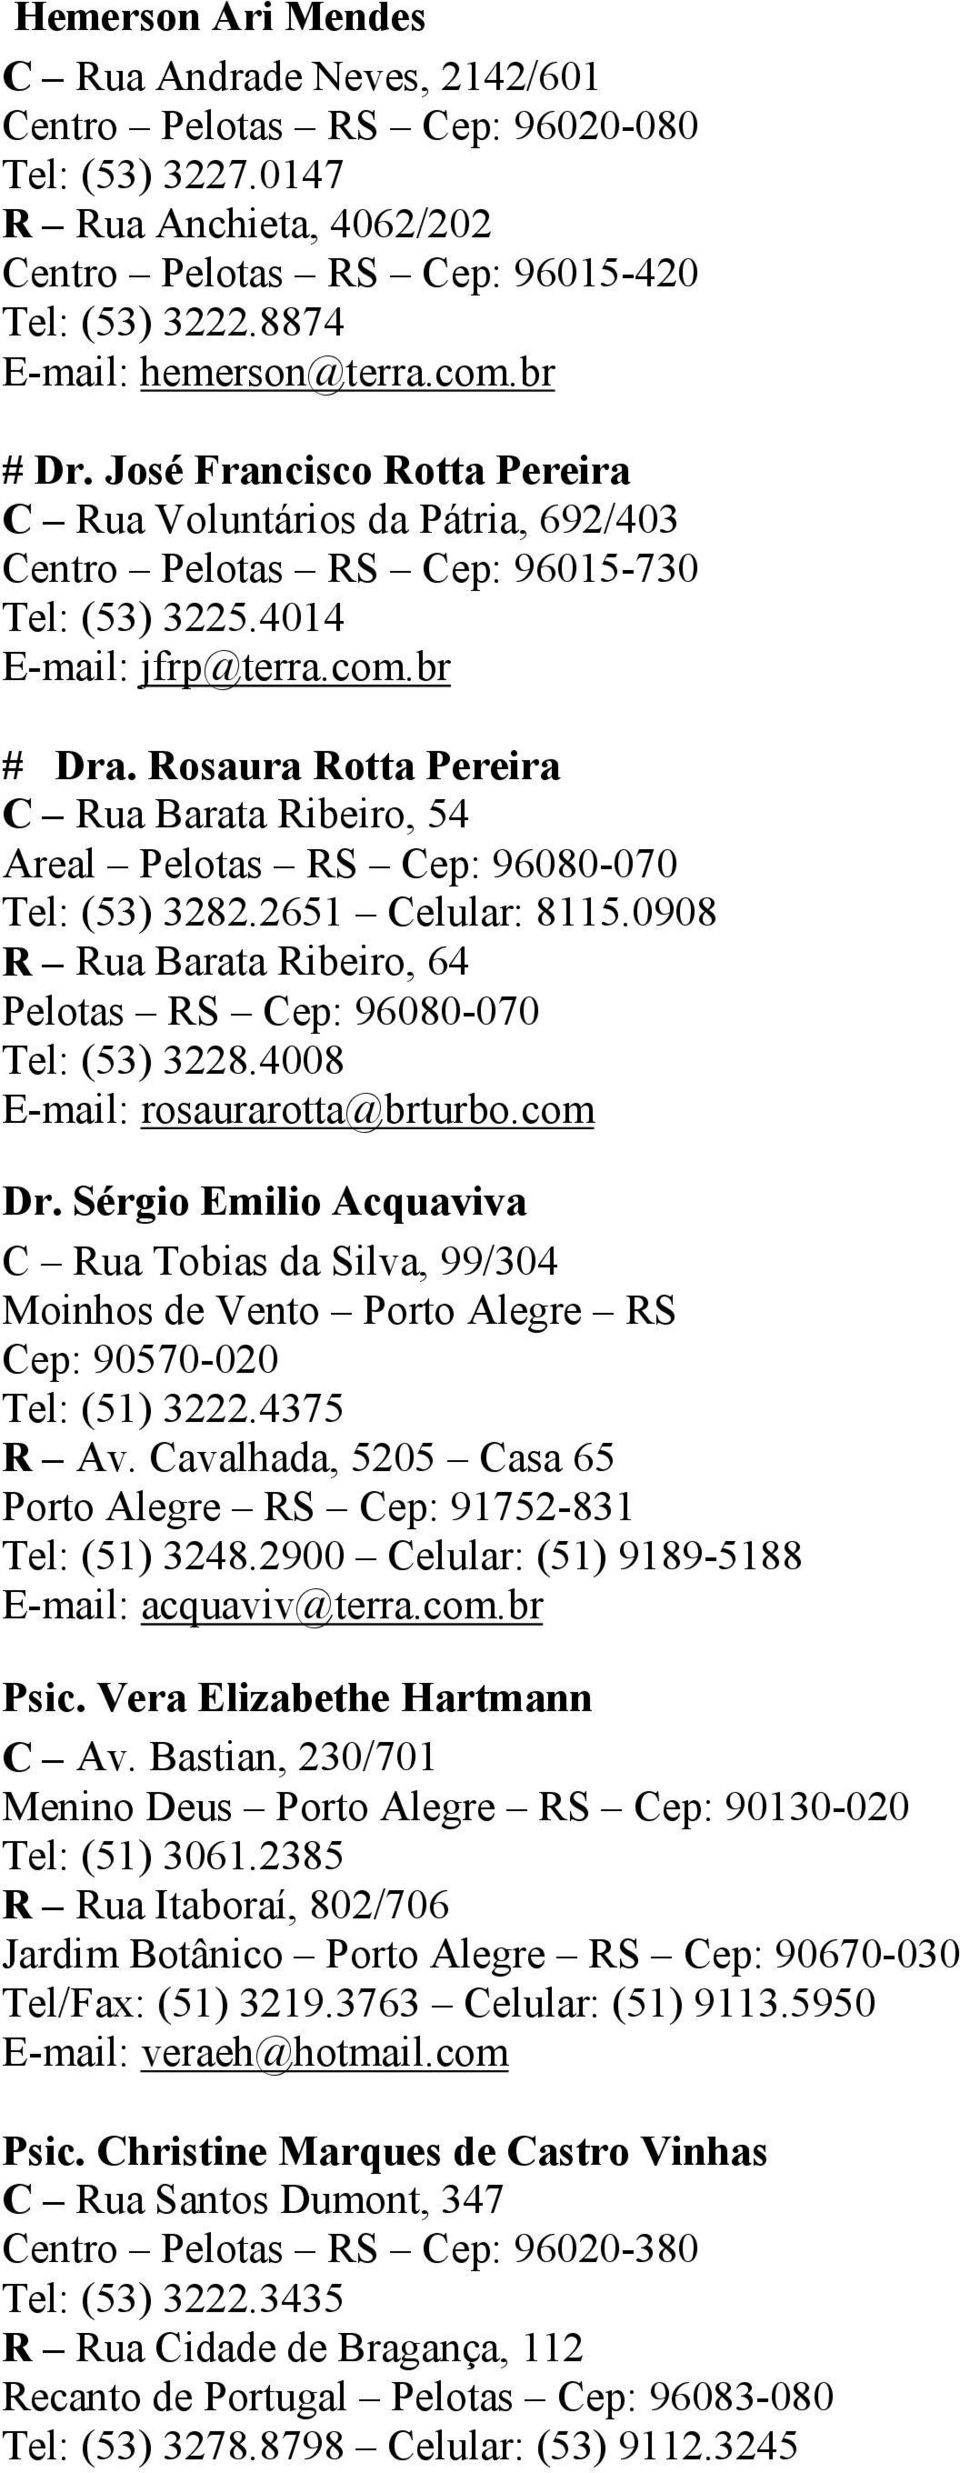 Rosaura Rotta Pereira C Rua Barata Ribeiro, 54 Areal Pelotas RS Cep: 96080-070 Tel: (53) 3282.2651 Celular: 8115.0908 R Rua Barata Ribeiro, 64 Pelotas RS Cep: 96080-070 Tel: (53) 3228.